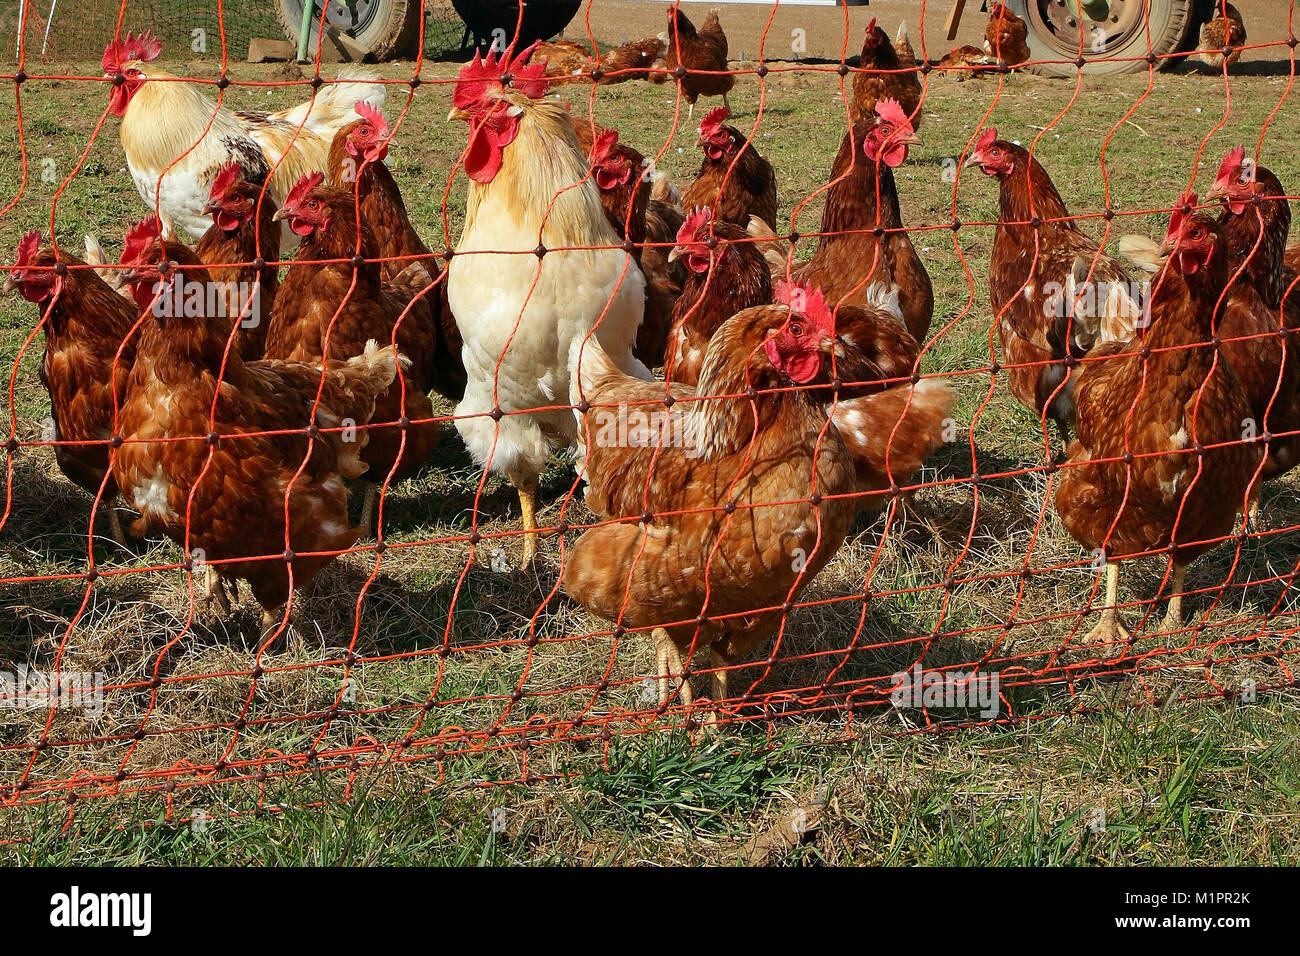 Hühner in Freilandhaltung mit Entlastung in einer Wiese. Im Hintergrund ist ein mobiler Hühnerstall., Hühner in Freilandhaltung mit Auslauf in ein Stockfoto